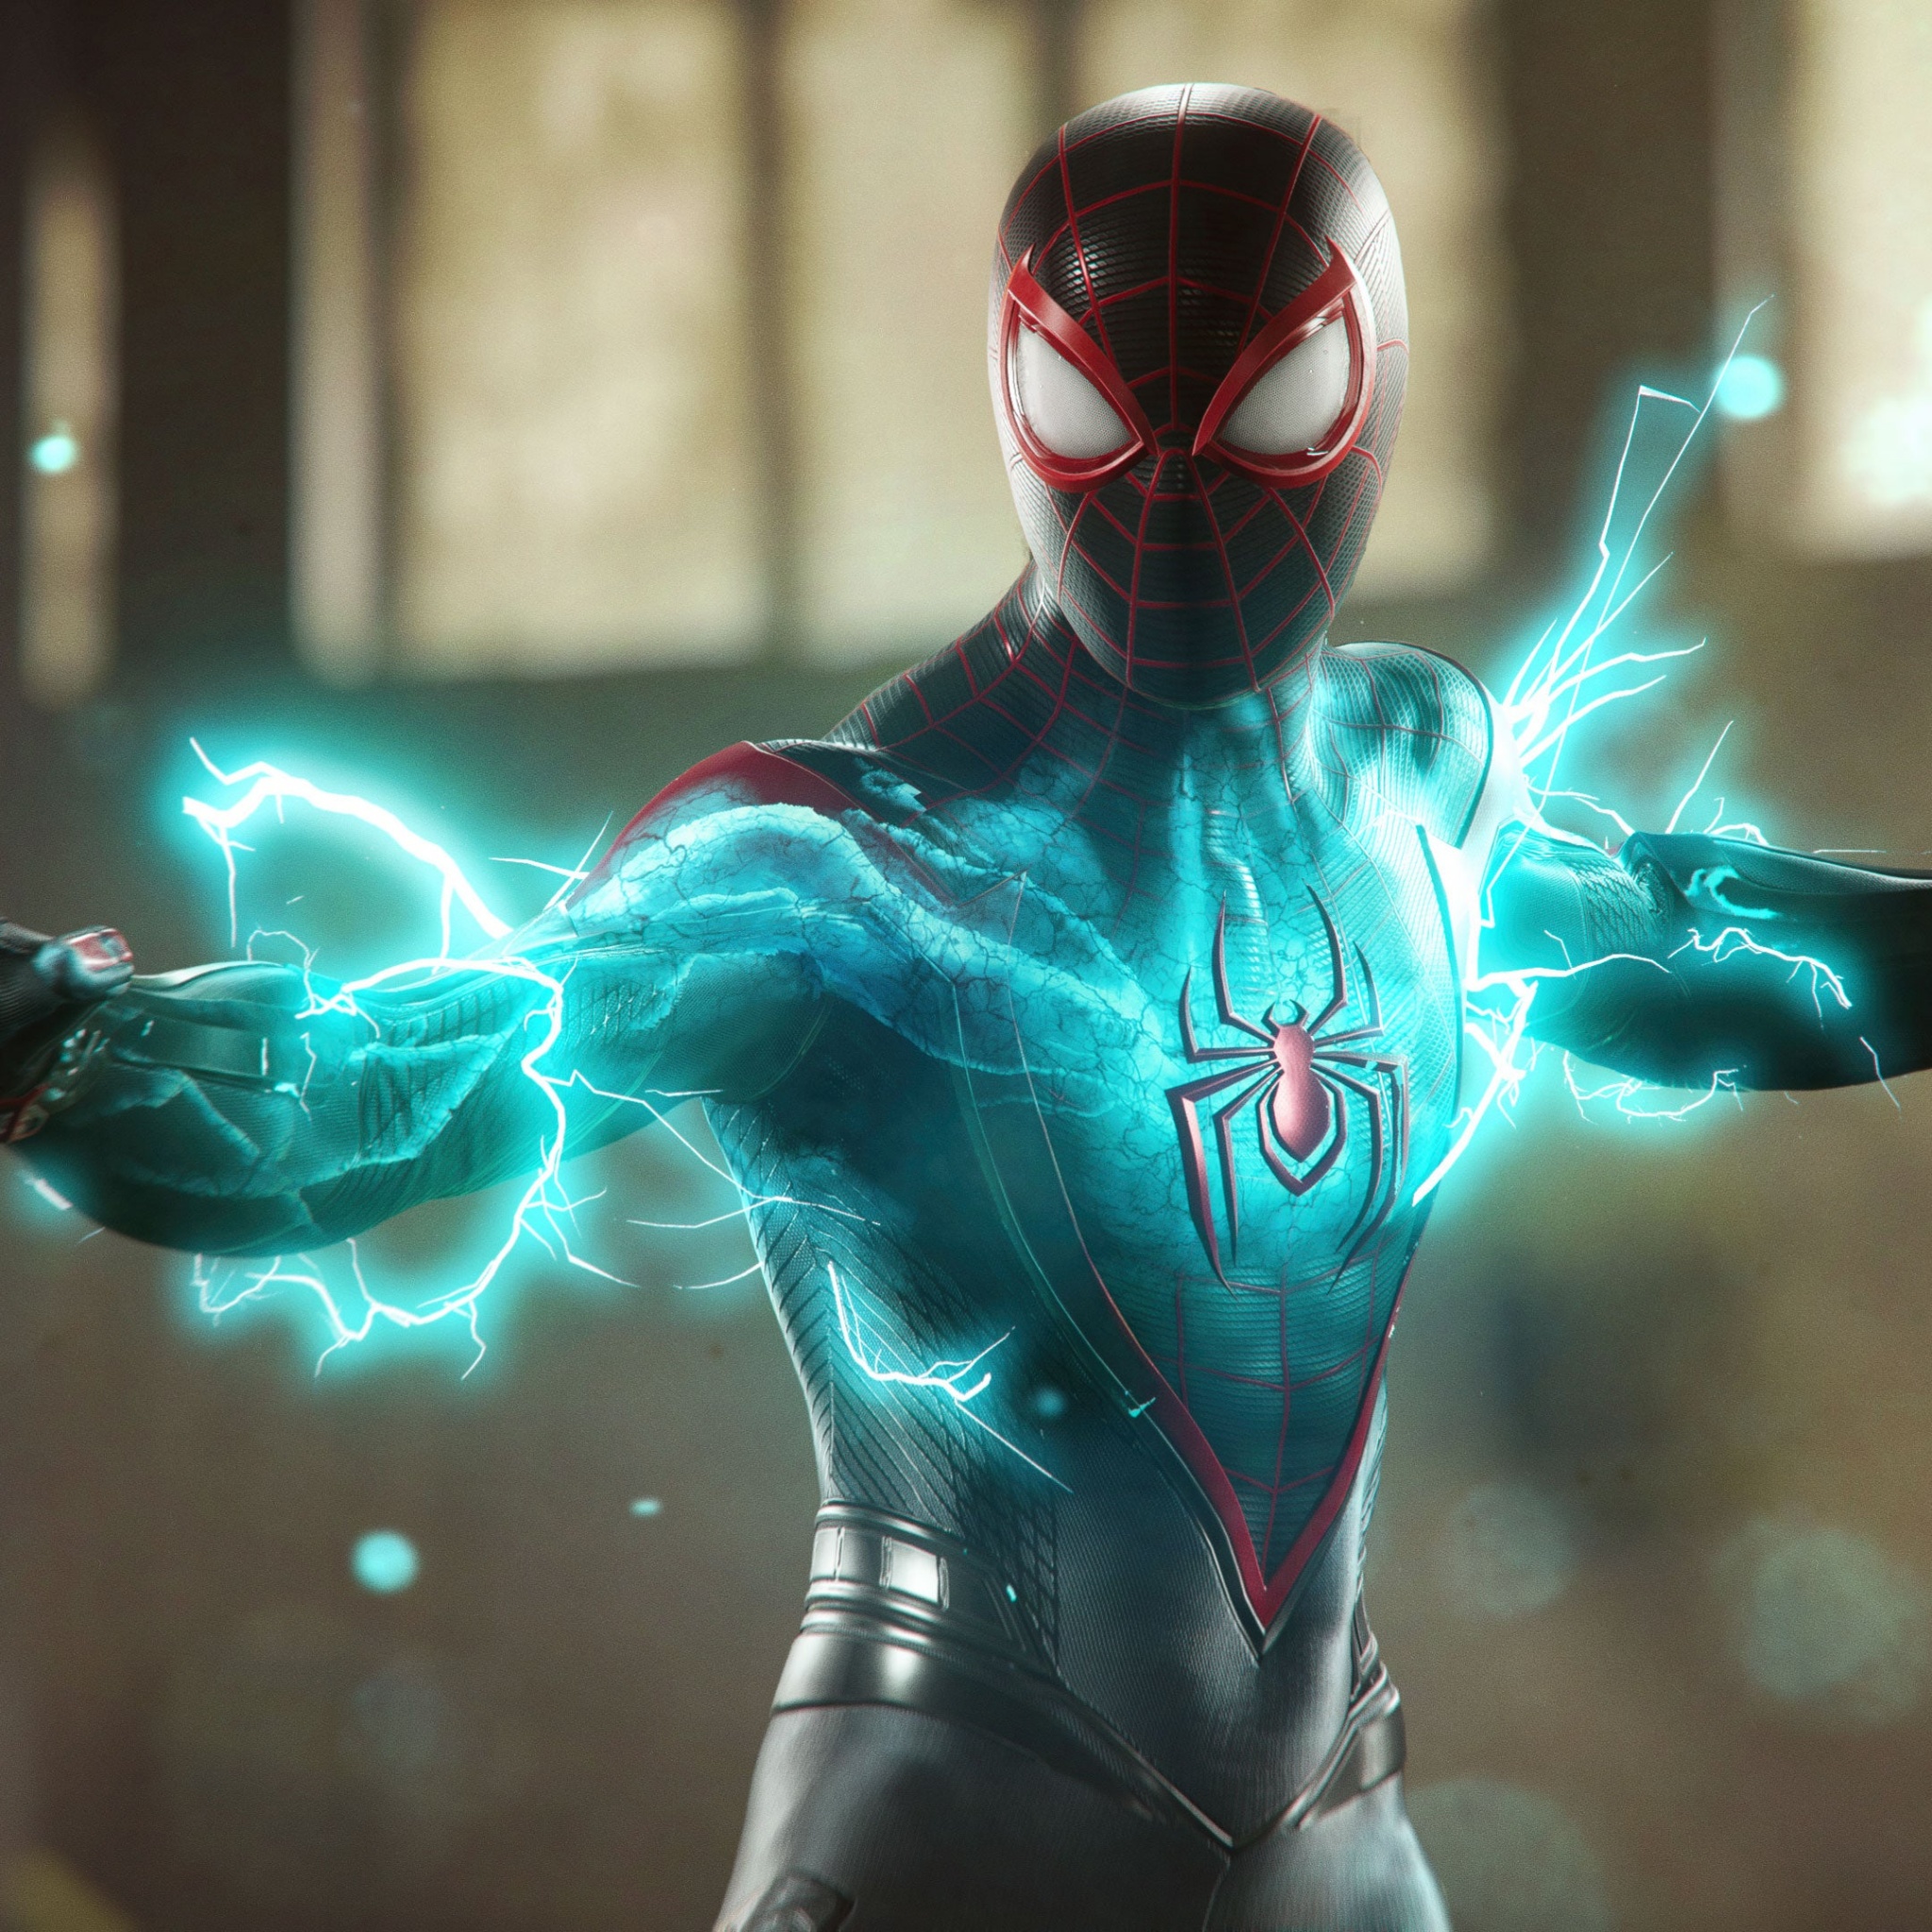 Marvel`s Spider-man 2. Marvel Spider man 2. PLAYSTATION 5 Marvel's Spider-man 2 Limited Edition. Marvel's Spider man 2 Deluxe обложка. Marvel s spider man 2 1.3 2